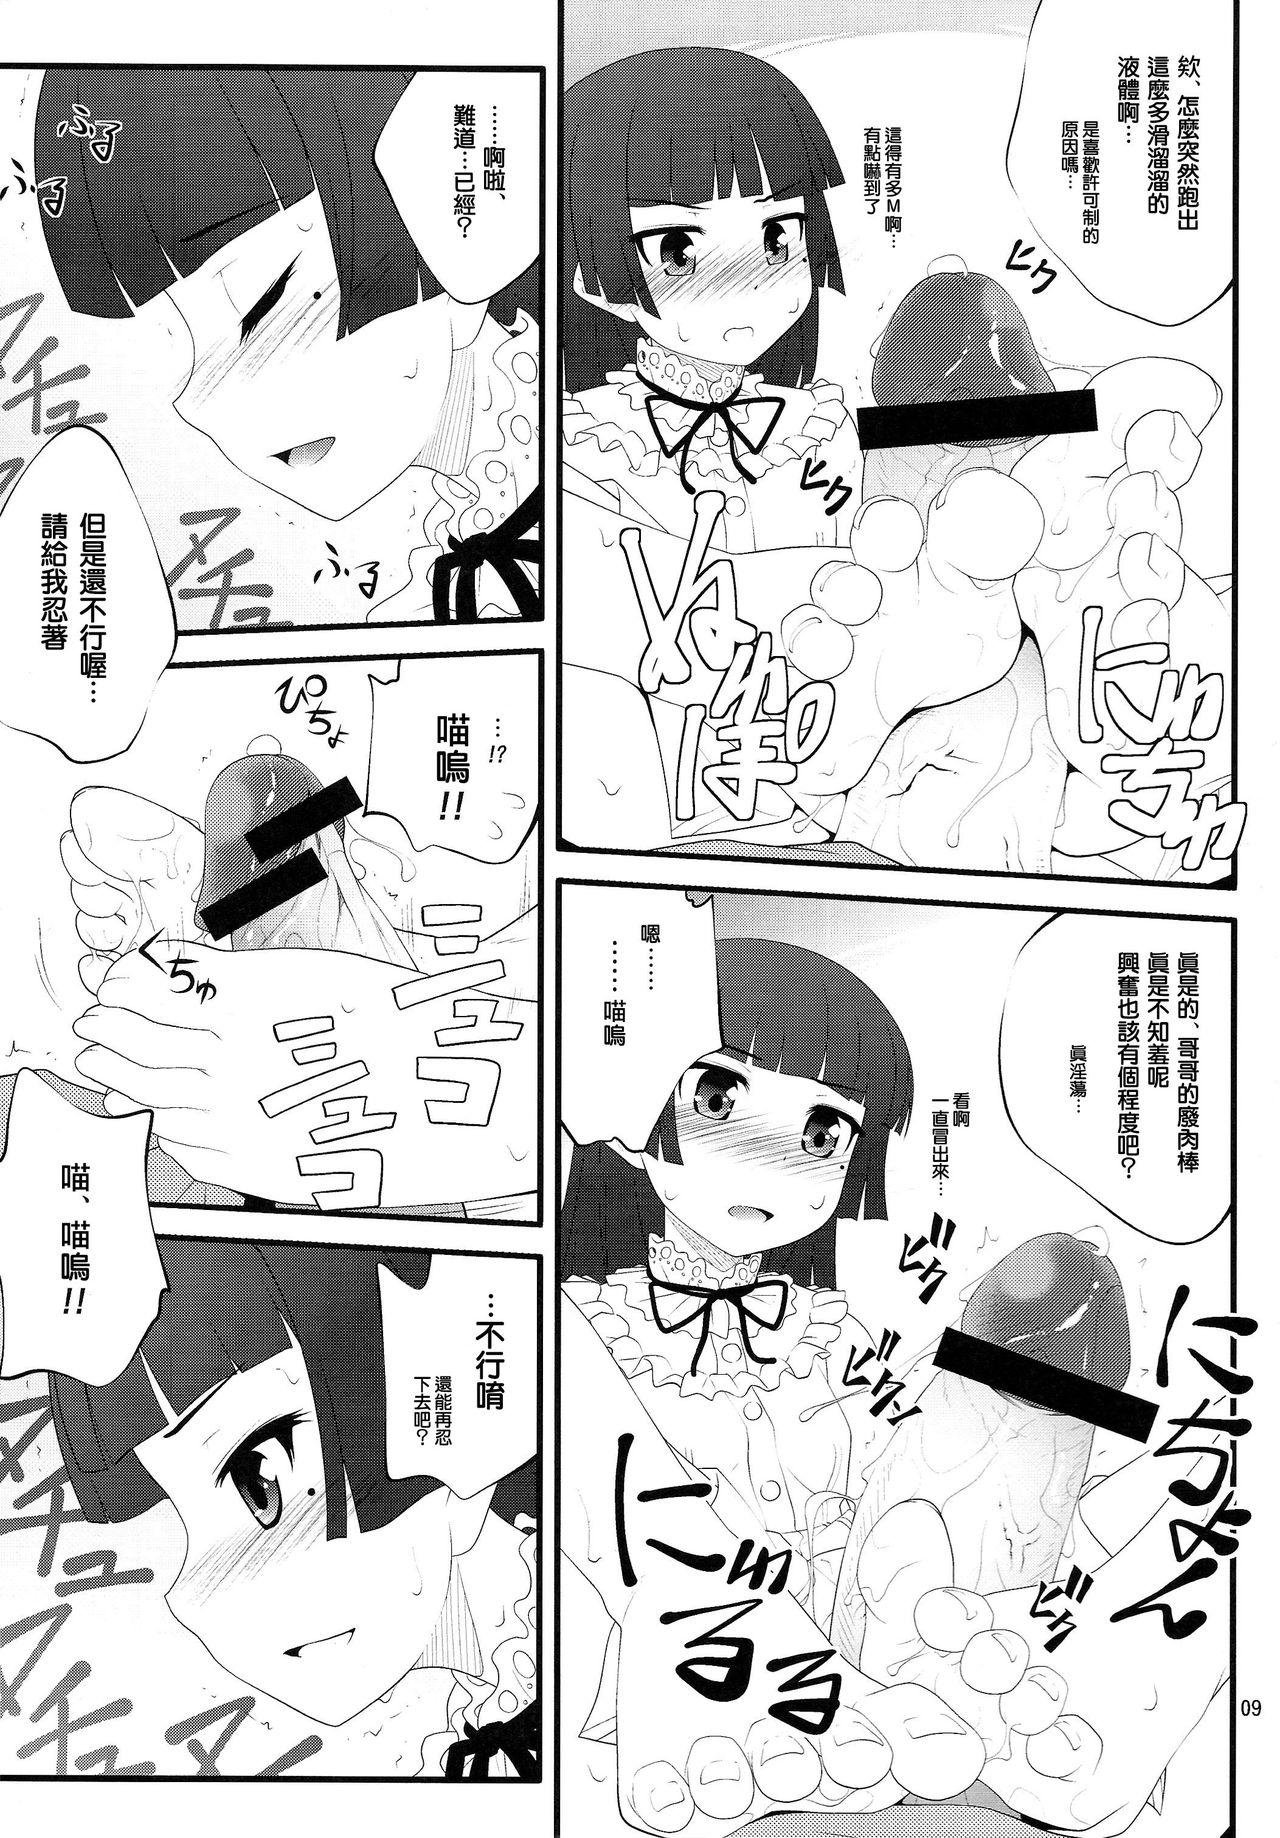 Couch Nii-san, Ashi Monde Choudai After - Ore no imouto ga konna ni kawaii wake ga nai Bikini - Page 9